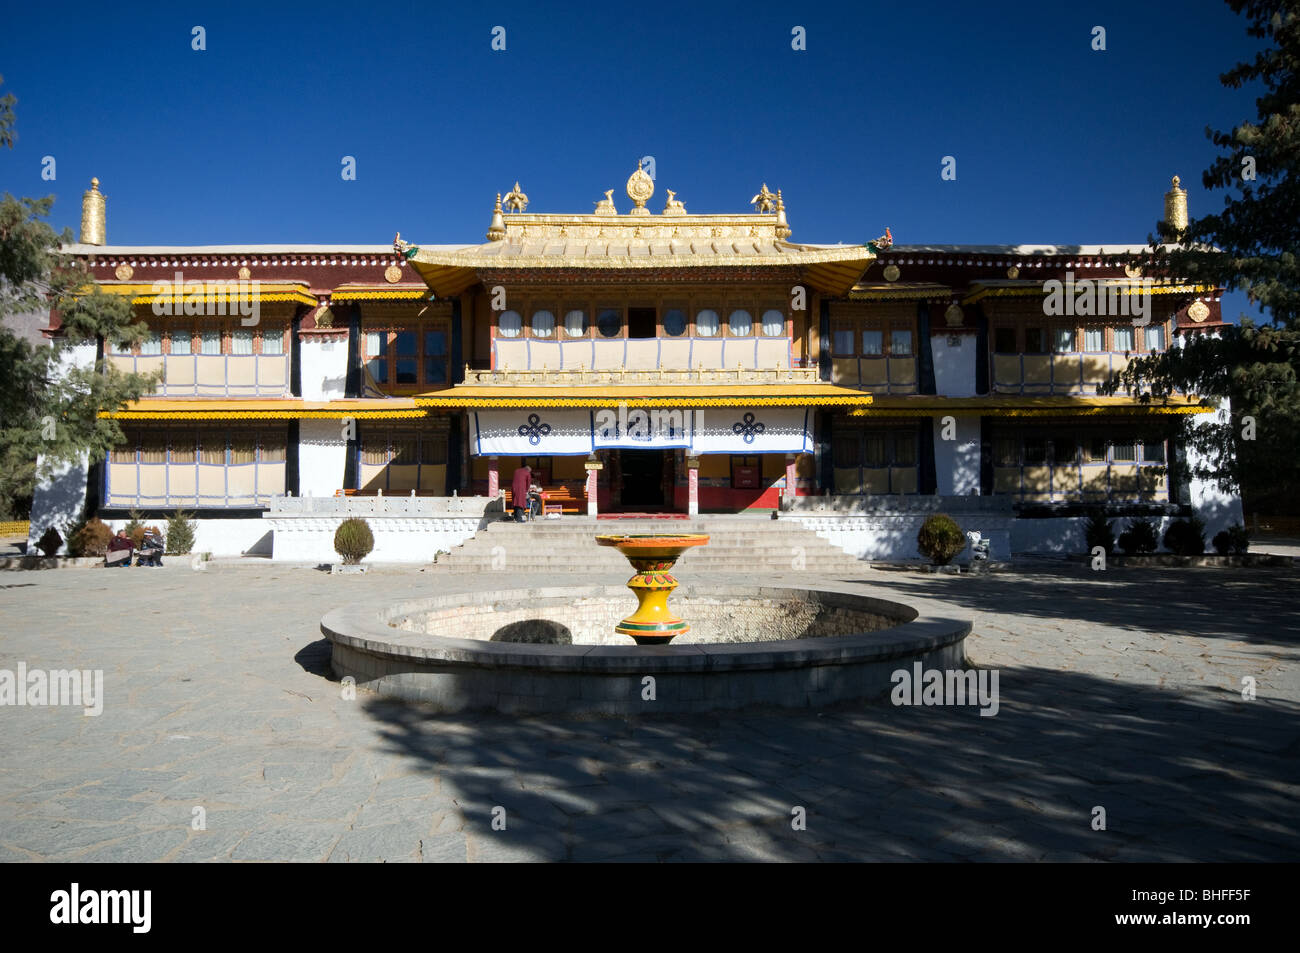 The Norbulingka, Lhasa, Tibet Stock Photo